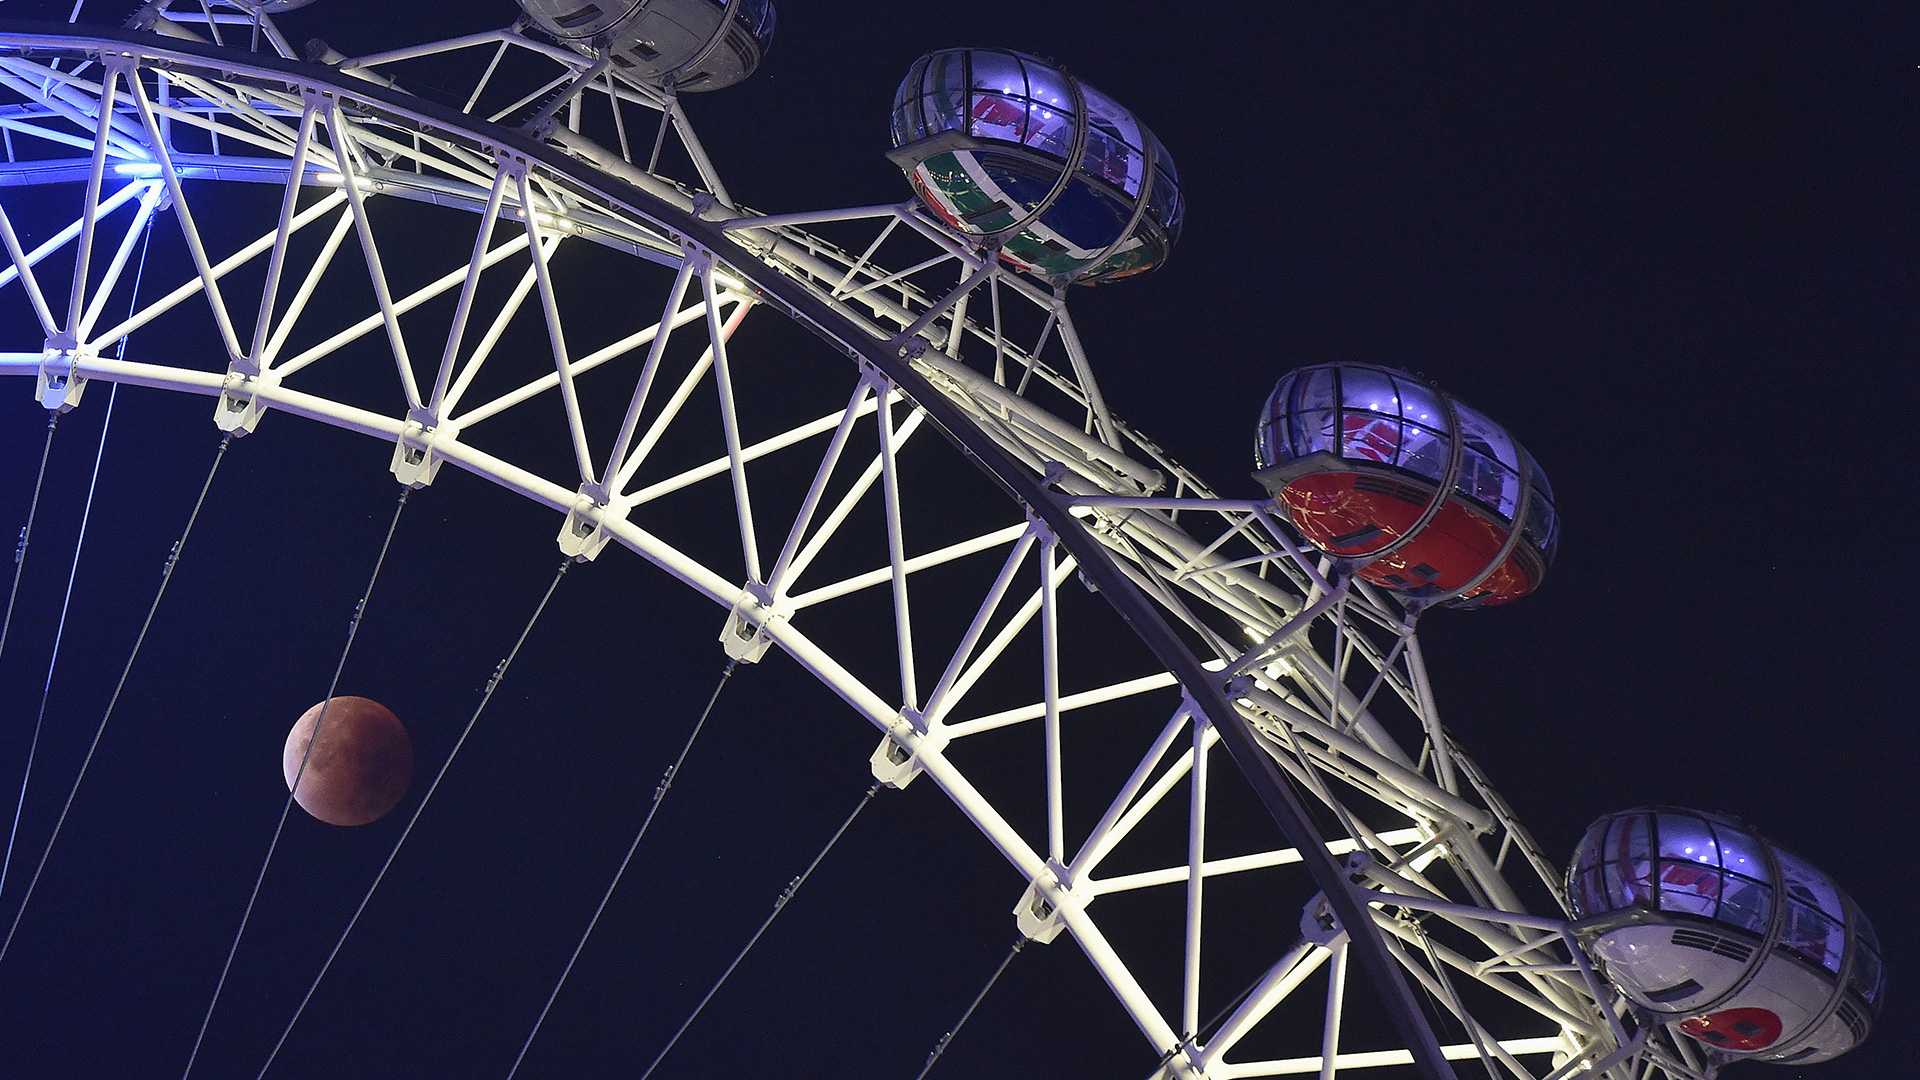 Dormir una noche en el London Eye ya es posible